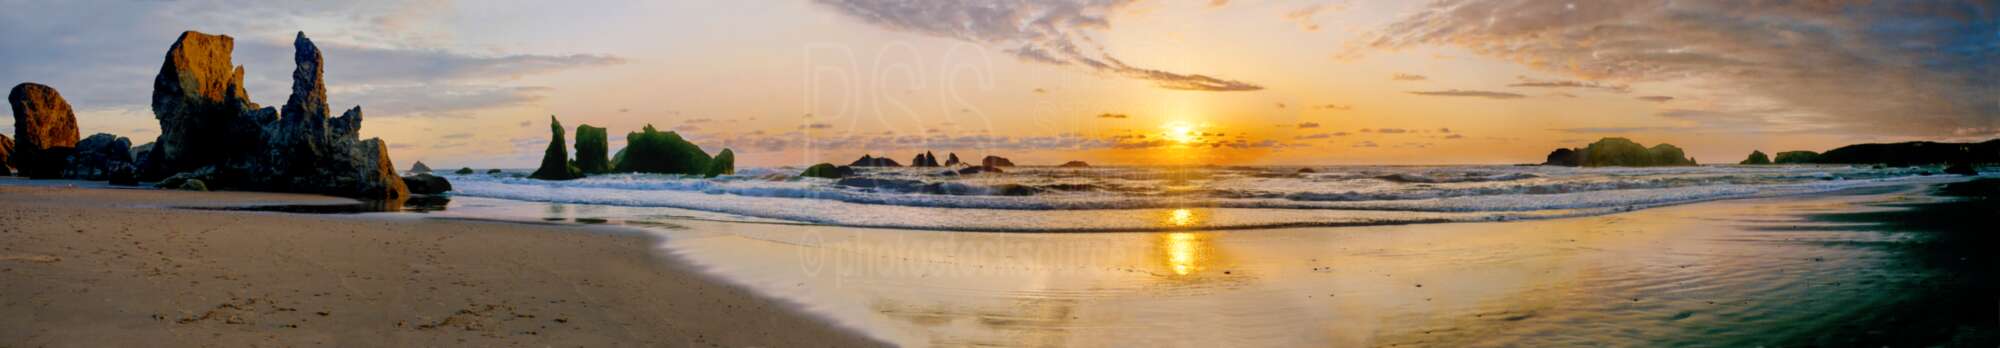 Bandon Beach Sunset